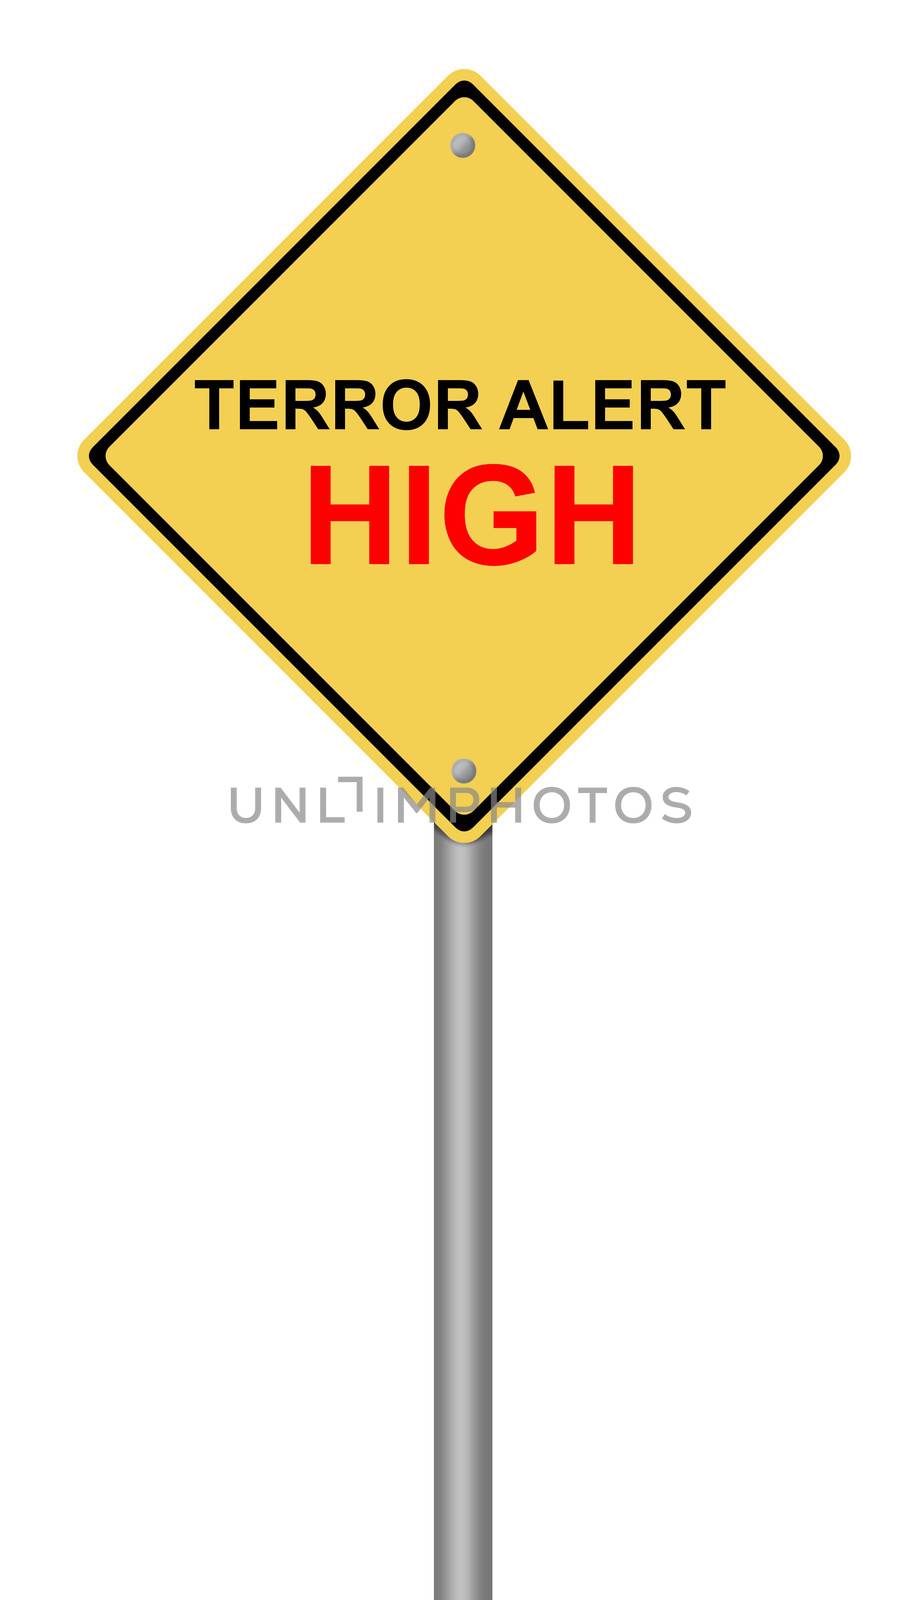 Terror Alert High Warning Sign by hlehnerer